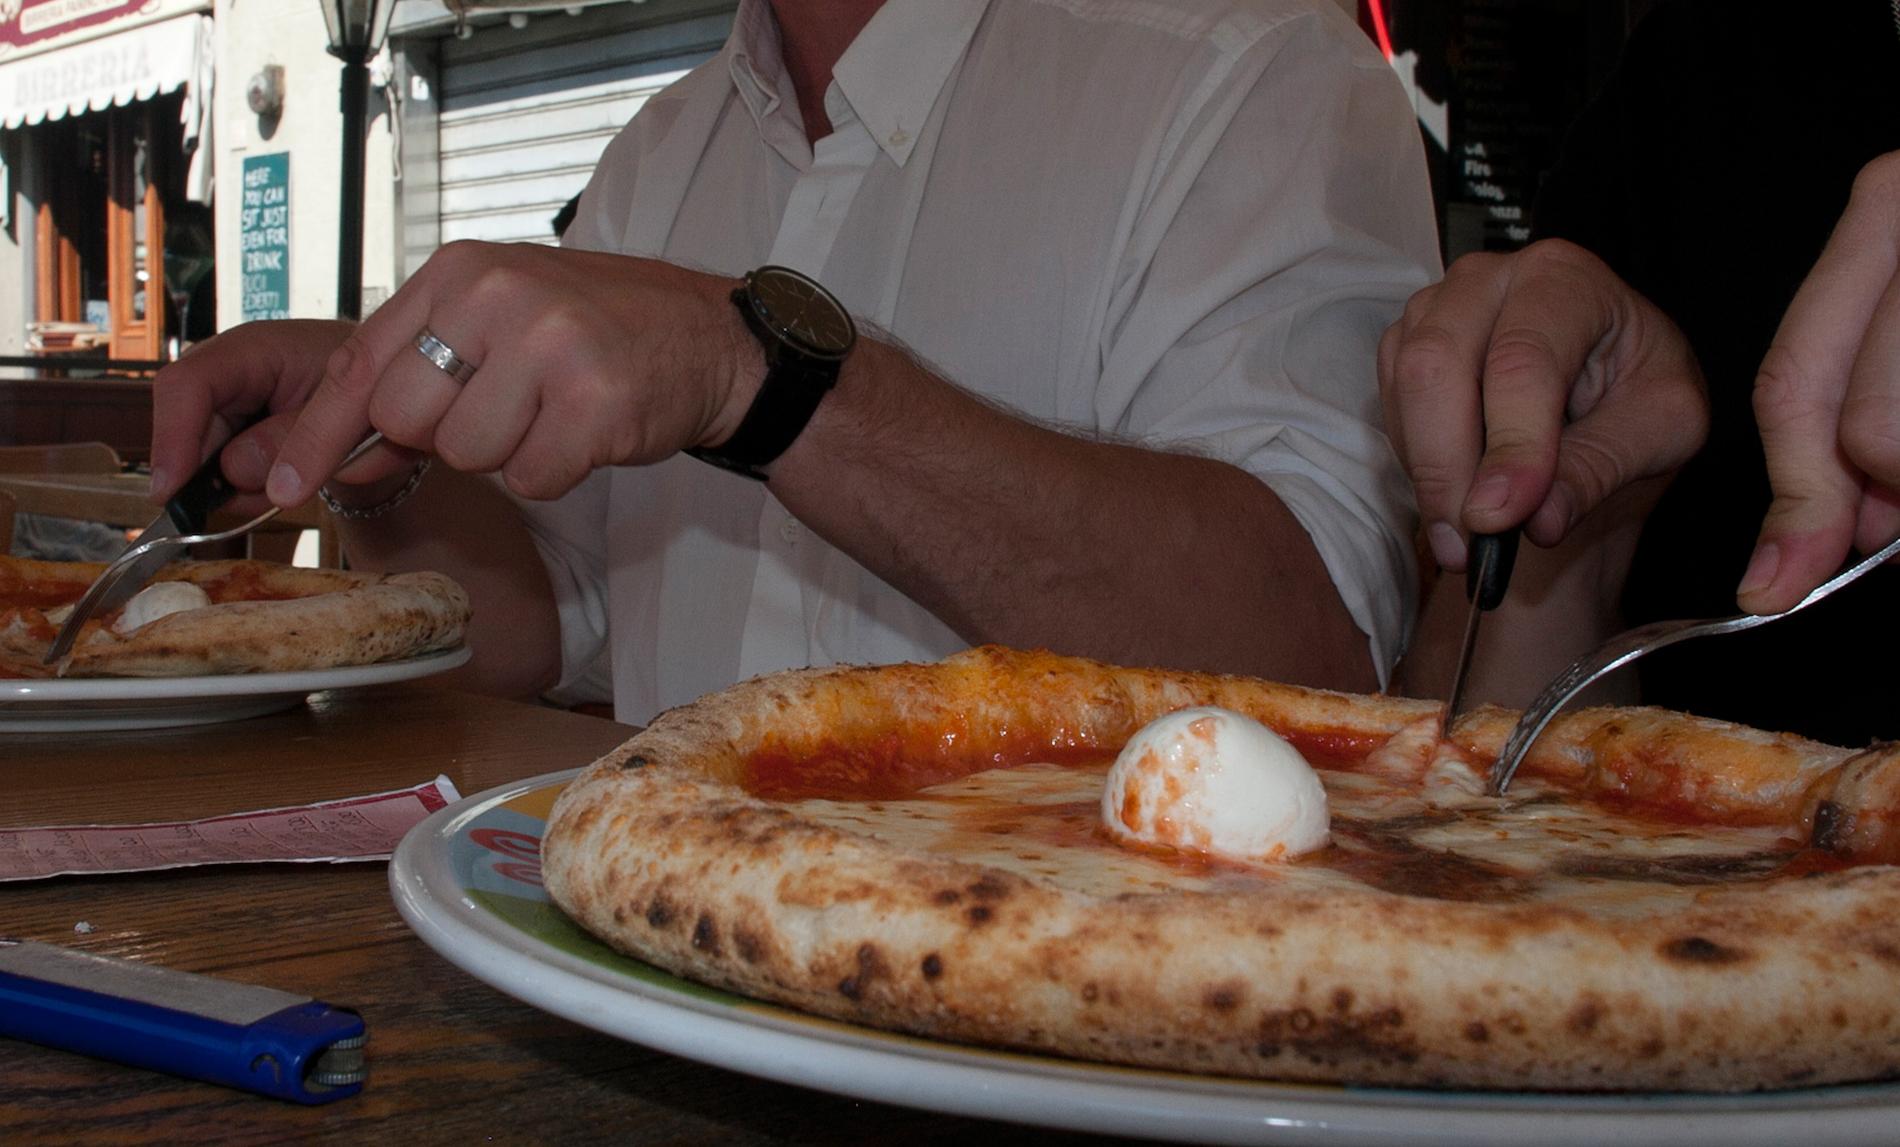 Innan de lämnade Italien hann de med en av resans absoluta gastronomiska höjdpunkter: Pizza med äkta buffelmozzarella i Florens, till tonerna av en dragspelande italienare. "Vi har varit med om hemskt mycket romantiska grejer, man skulle ha haft en tjej med sig", säger Roger.